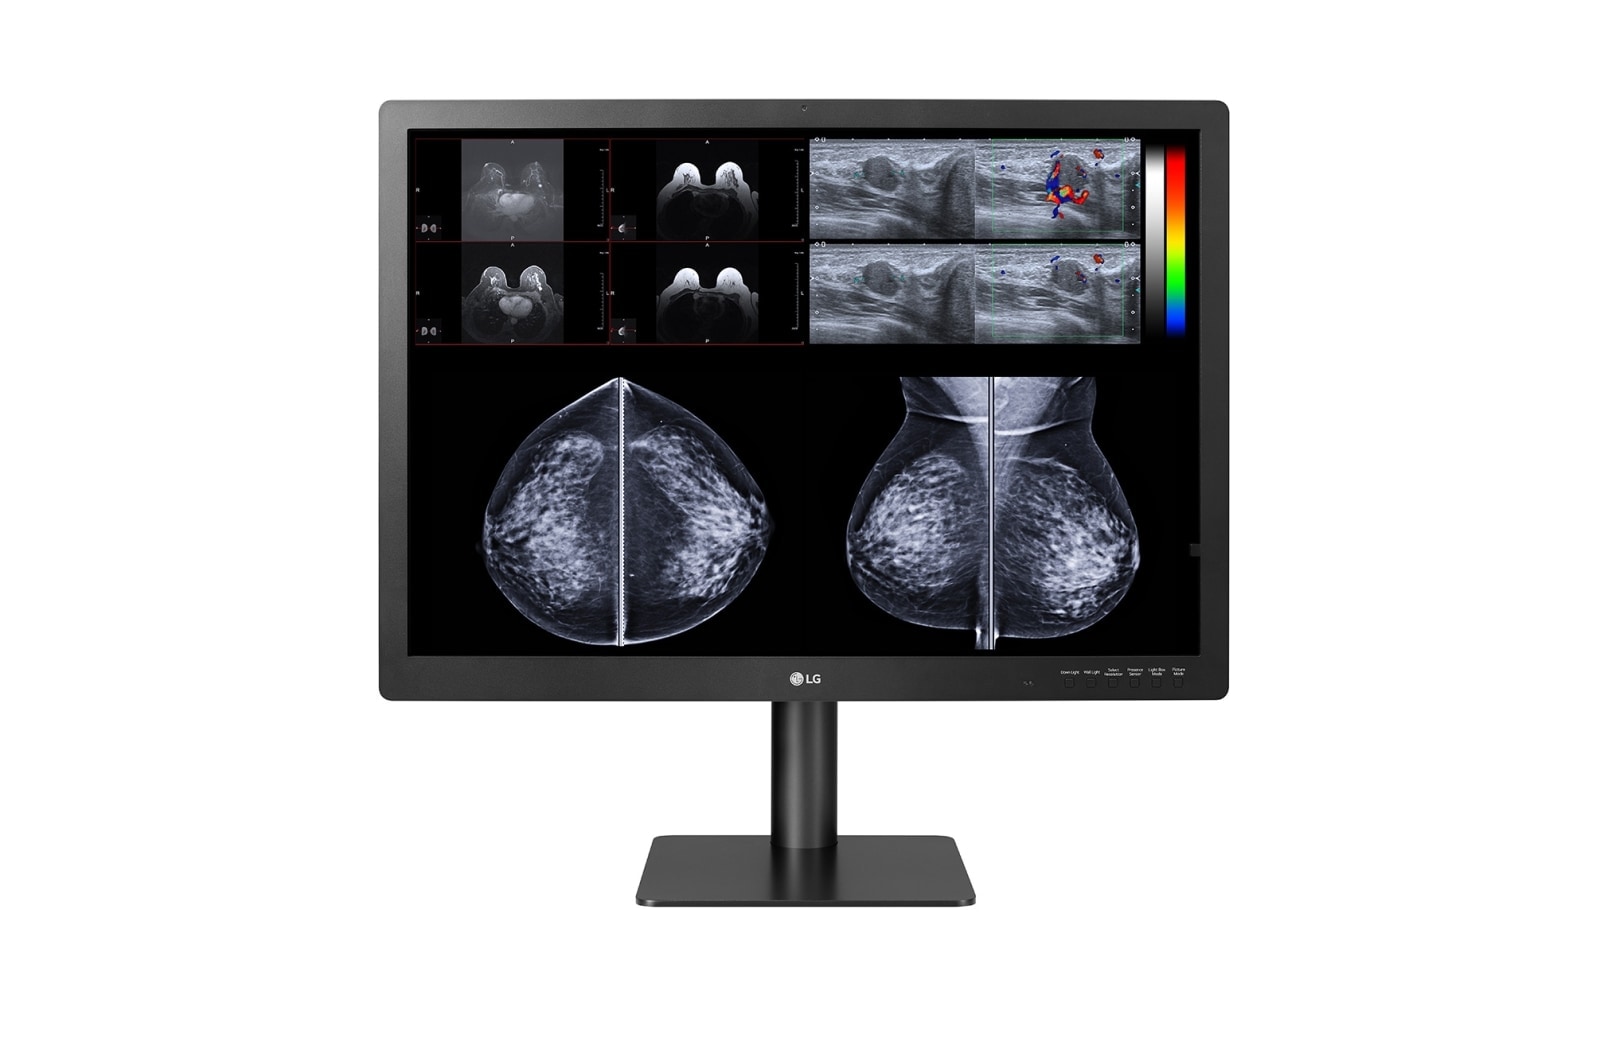 LG Monitor de diagnóstico IPS LG 31'' 12MP para mamografia, 31HN713D-B